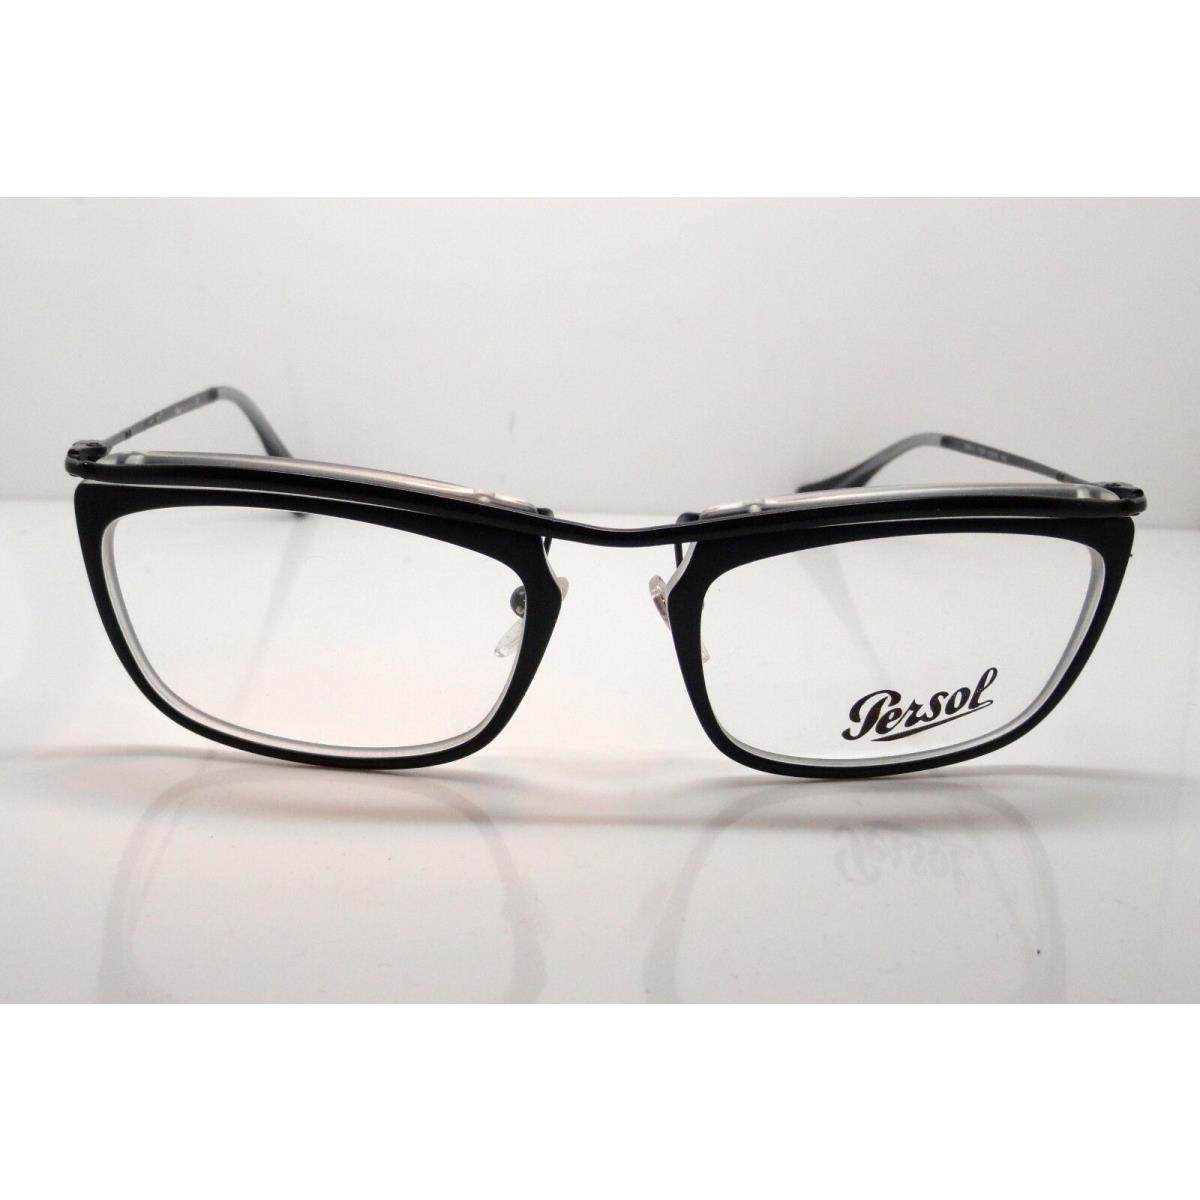 Persol eyeglasses  - Black Frame, Clear Demo Lens 0